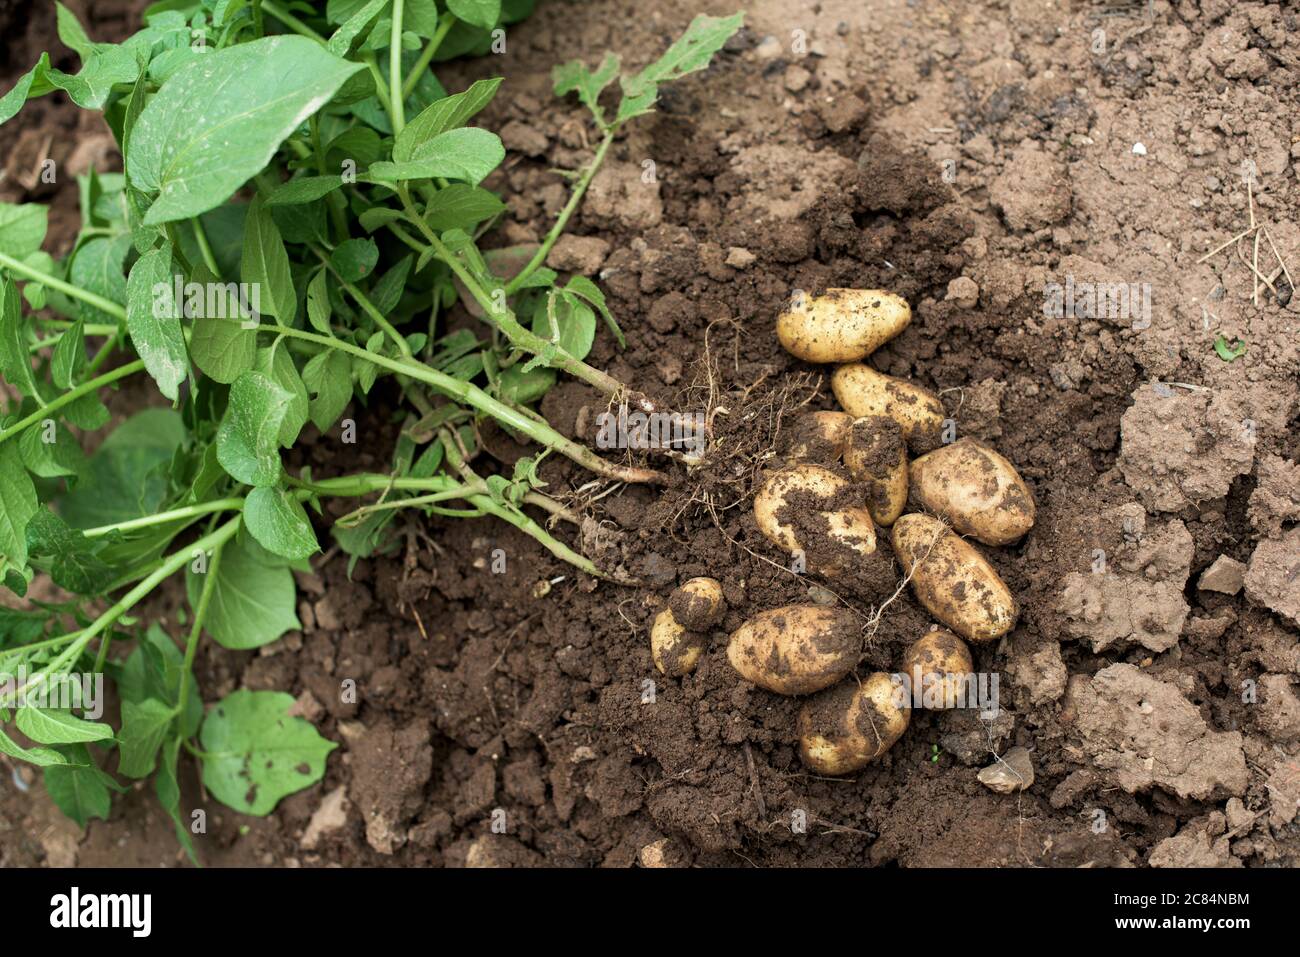 Pianta di patata giovane fuori del suolo con patate crude e foglie fresche Foto Stock